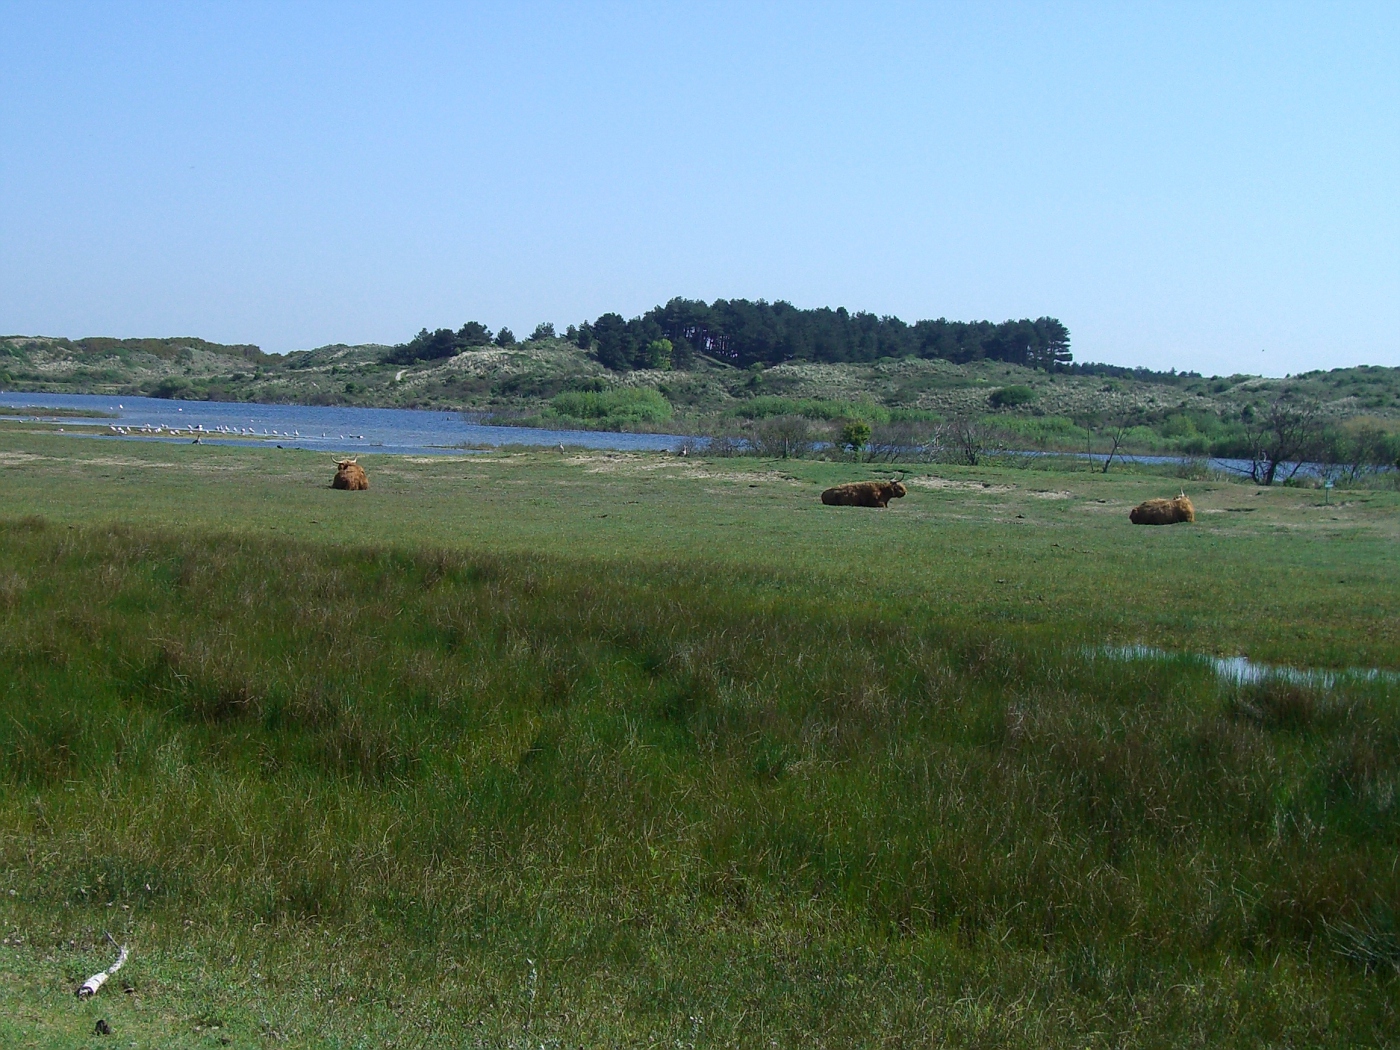 Free-running bisons in Kennemerland